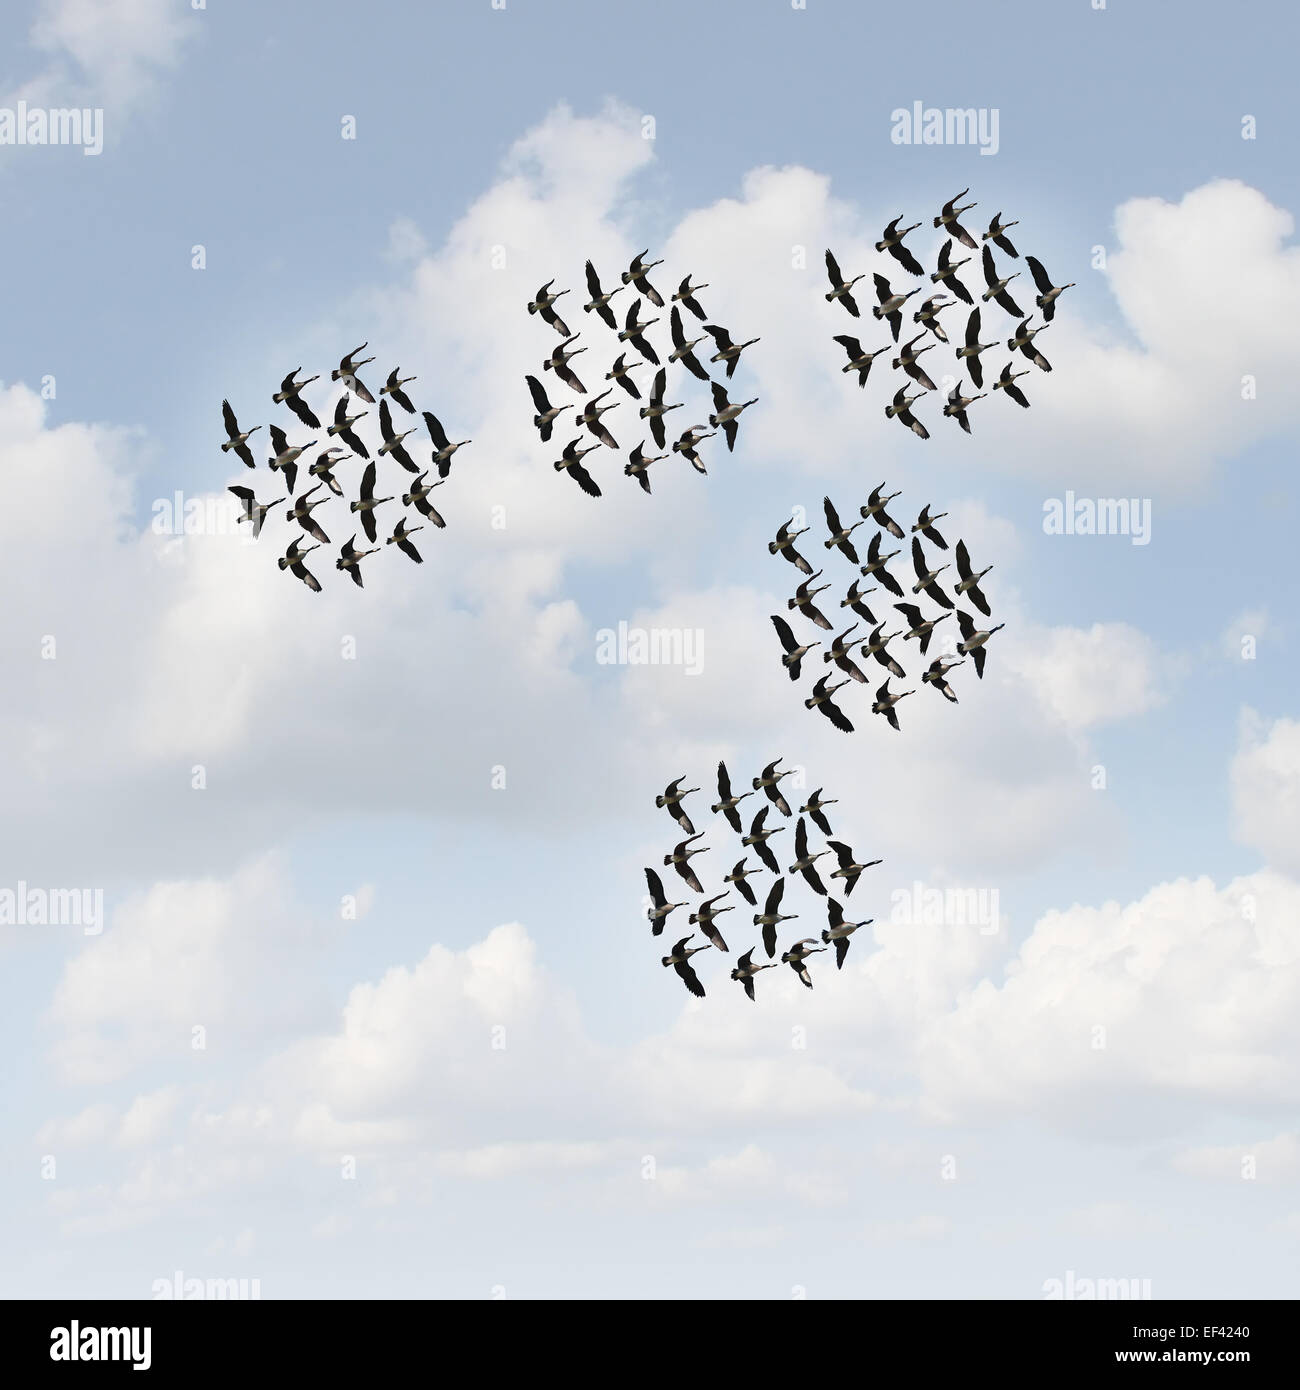 Mobiles Netzwerk und Kommunikationskonzept als Gruppen der organisierten Teams fliegende Gänse Herde gemeinsam als Unternehmen Metapher für Teamwork Management bewegen. Stockfoto